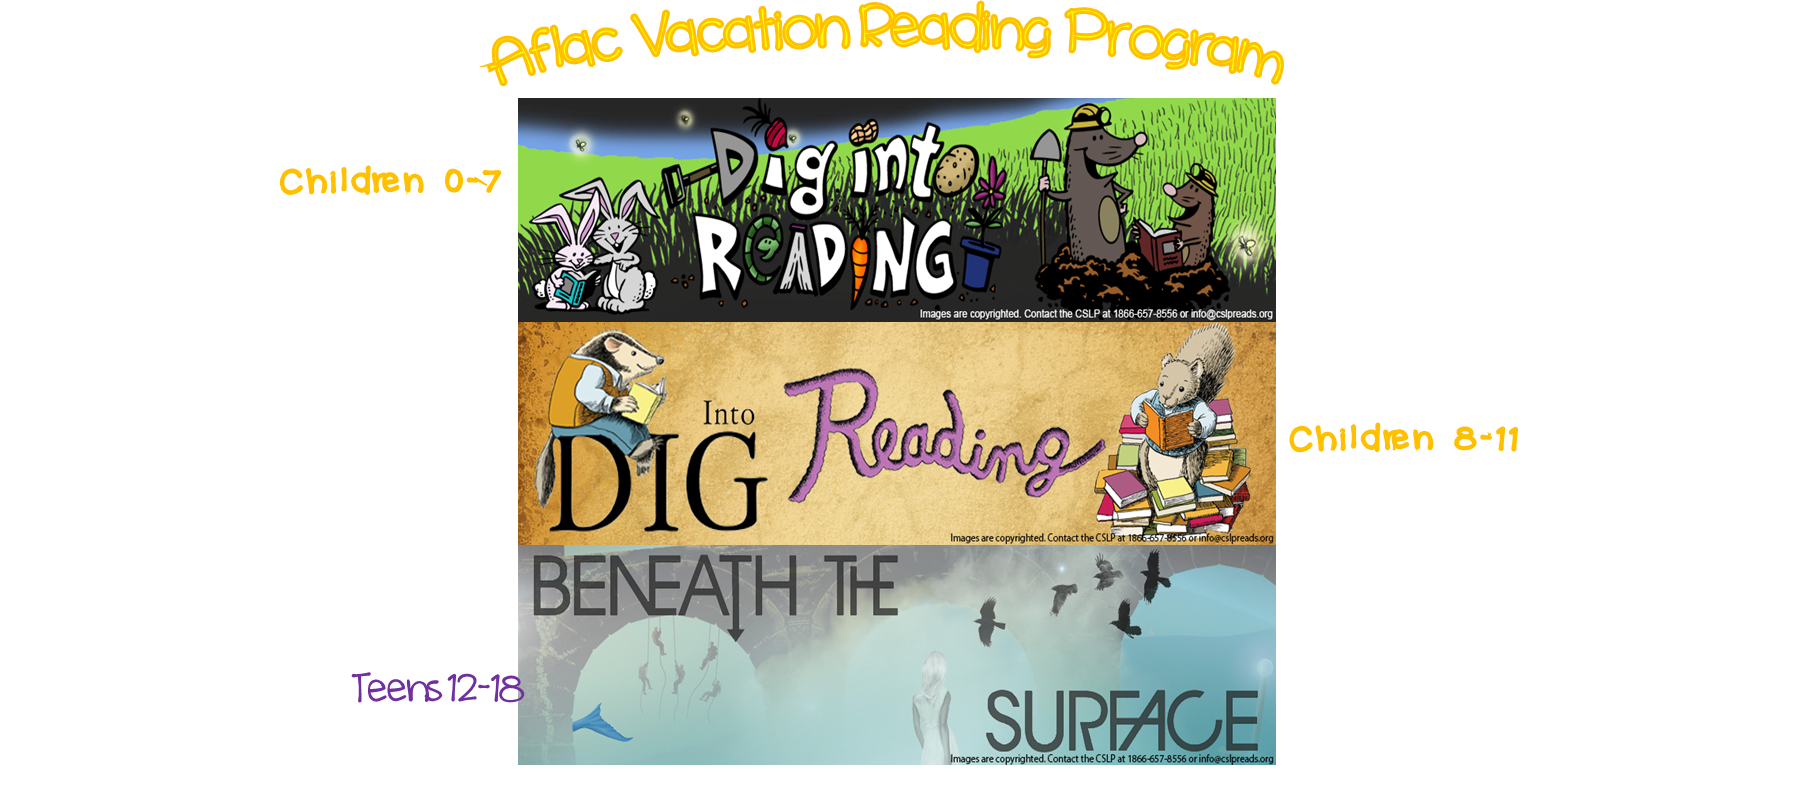 Aflac Vacation Reading Program Kickoff